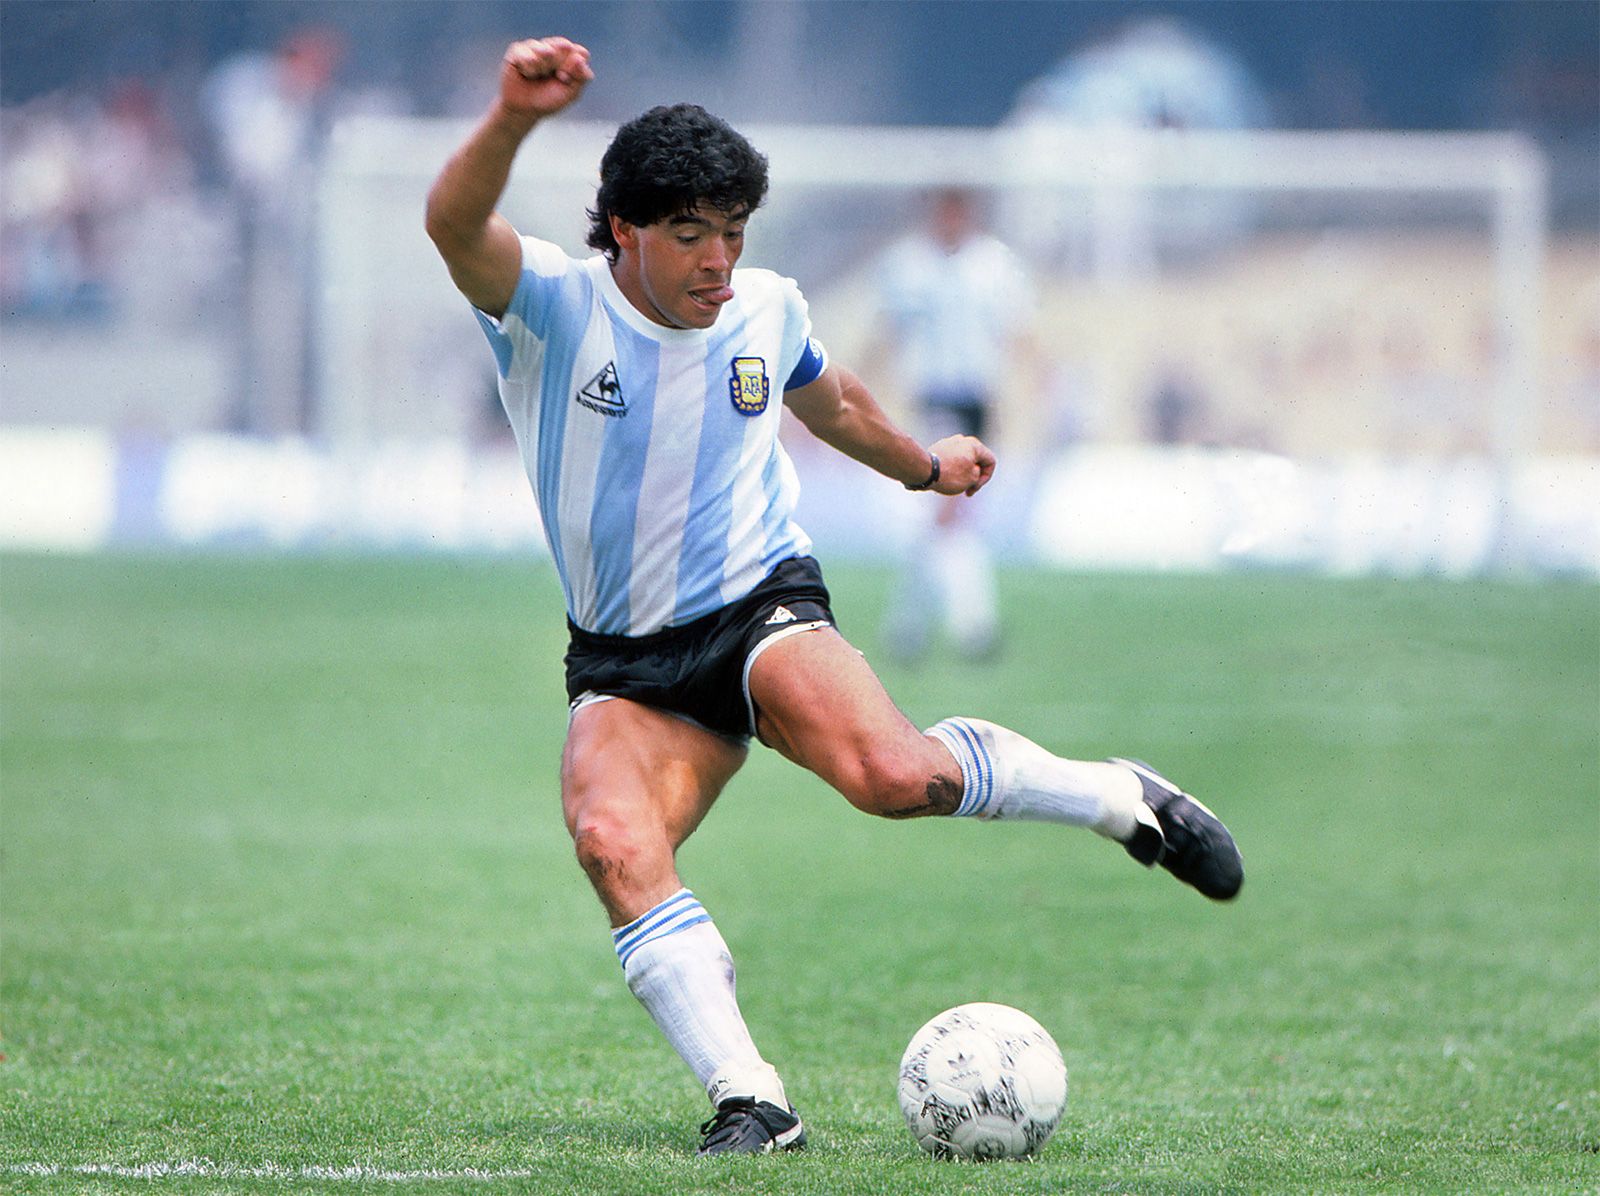 Diego-Maradona-1986.jpg